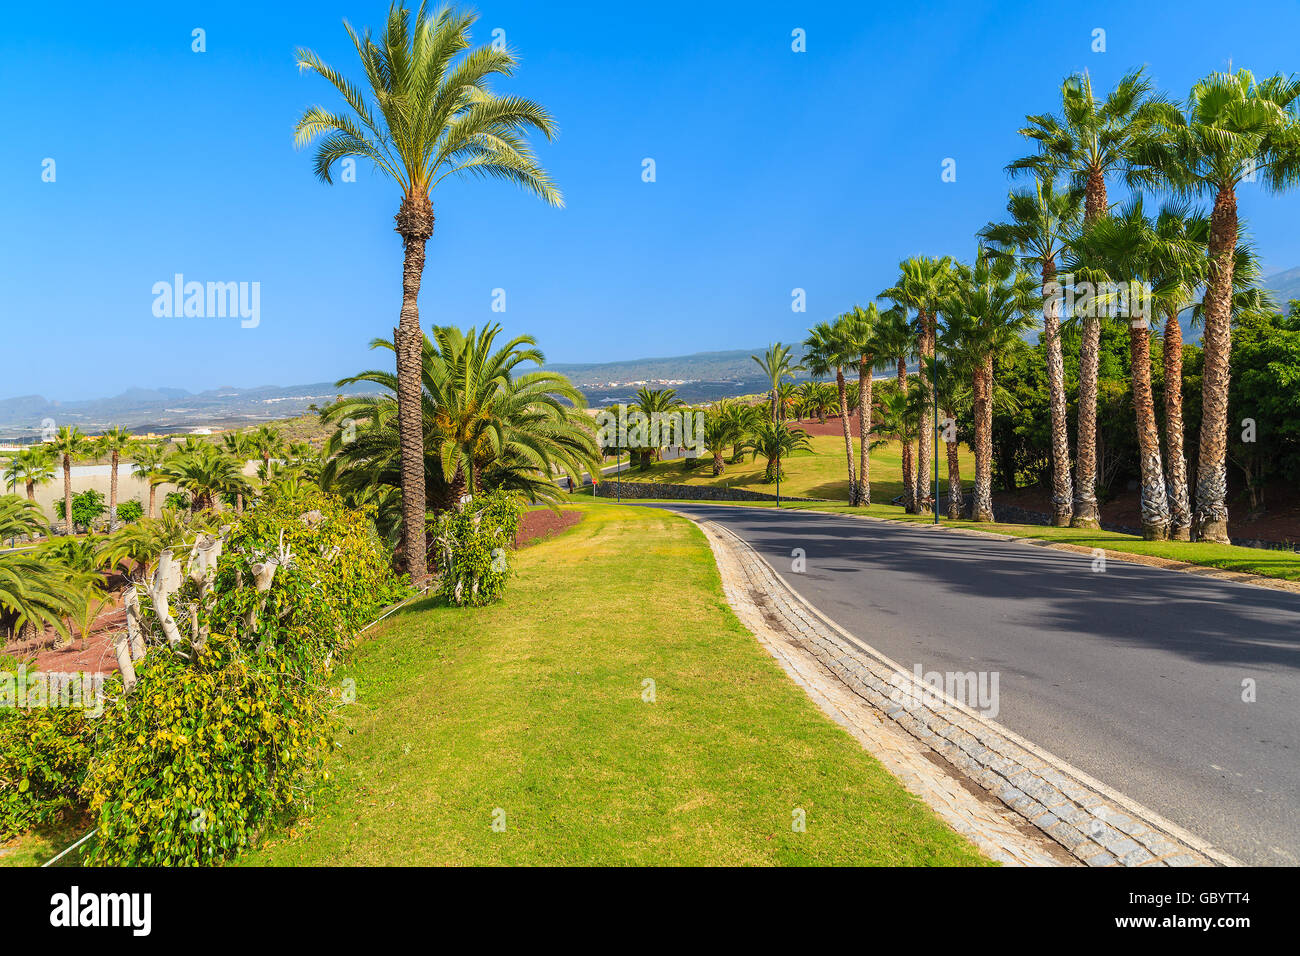 Strada con alberi di palma nel paesaggio tropicale dell'isola di Tenerife, Spagna Foto Stock